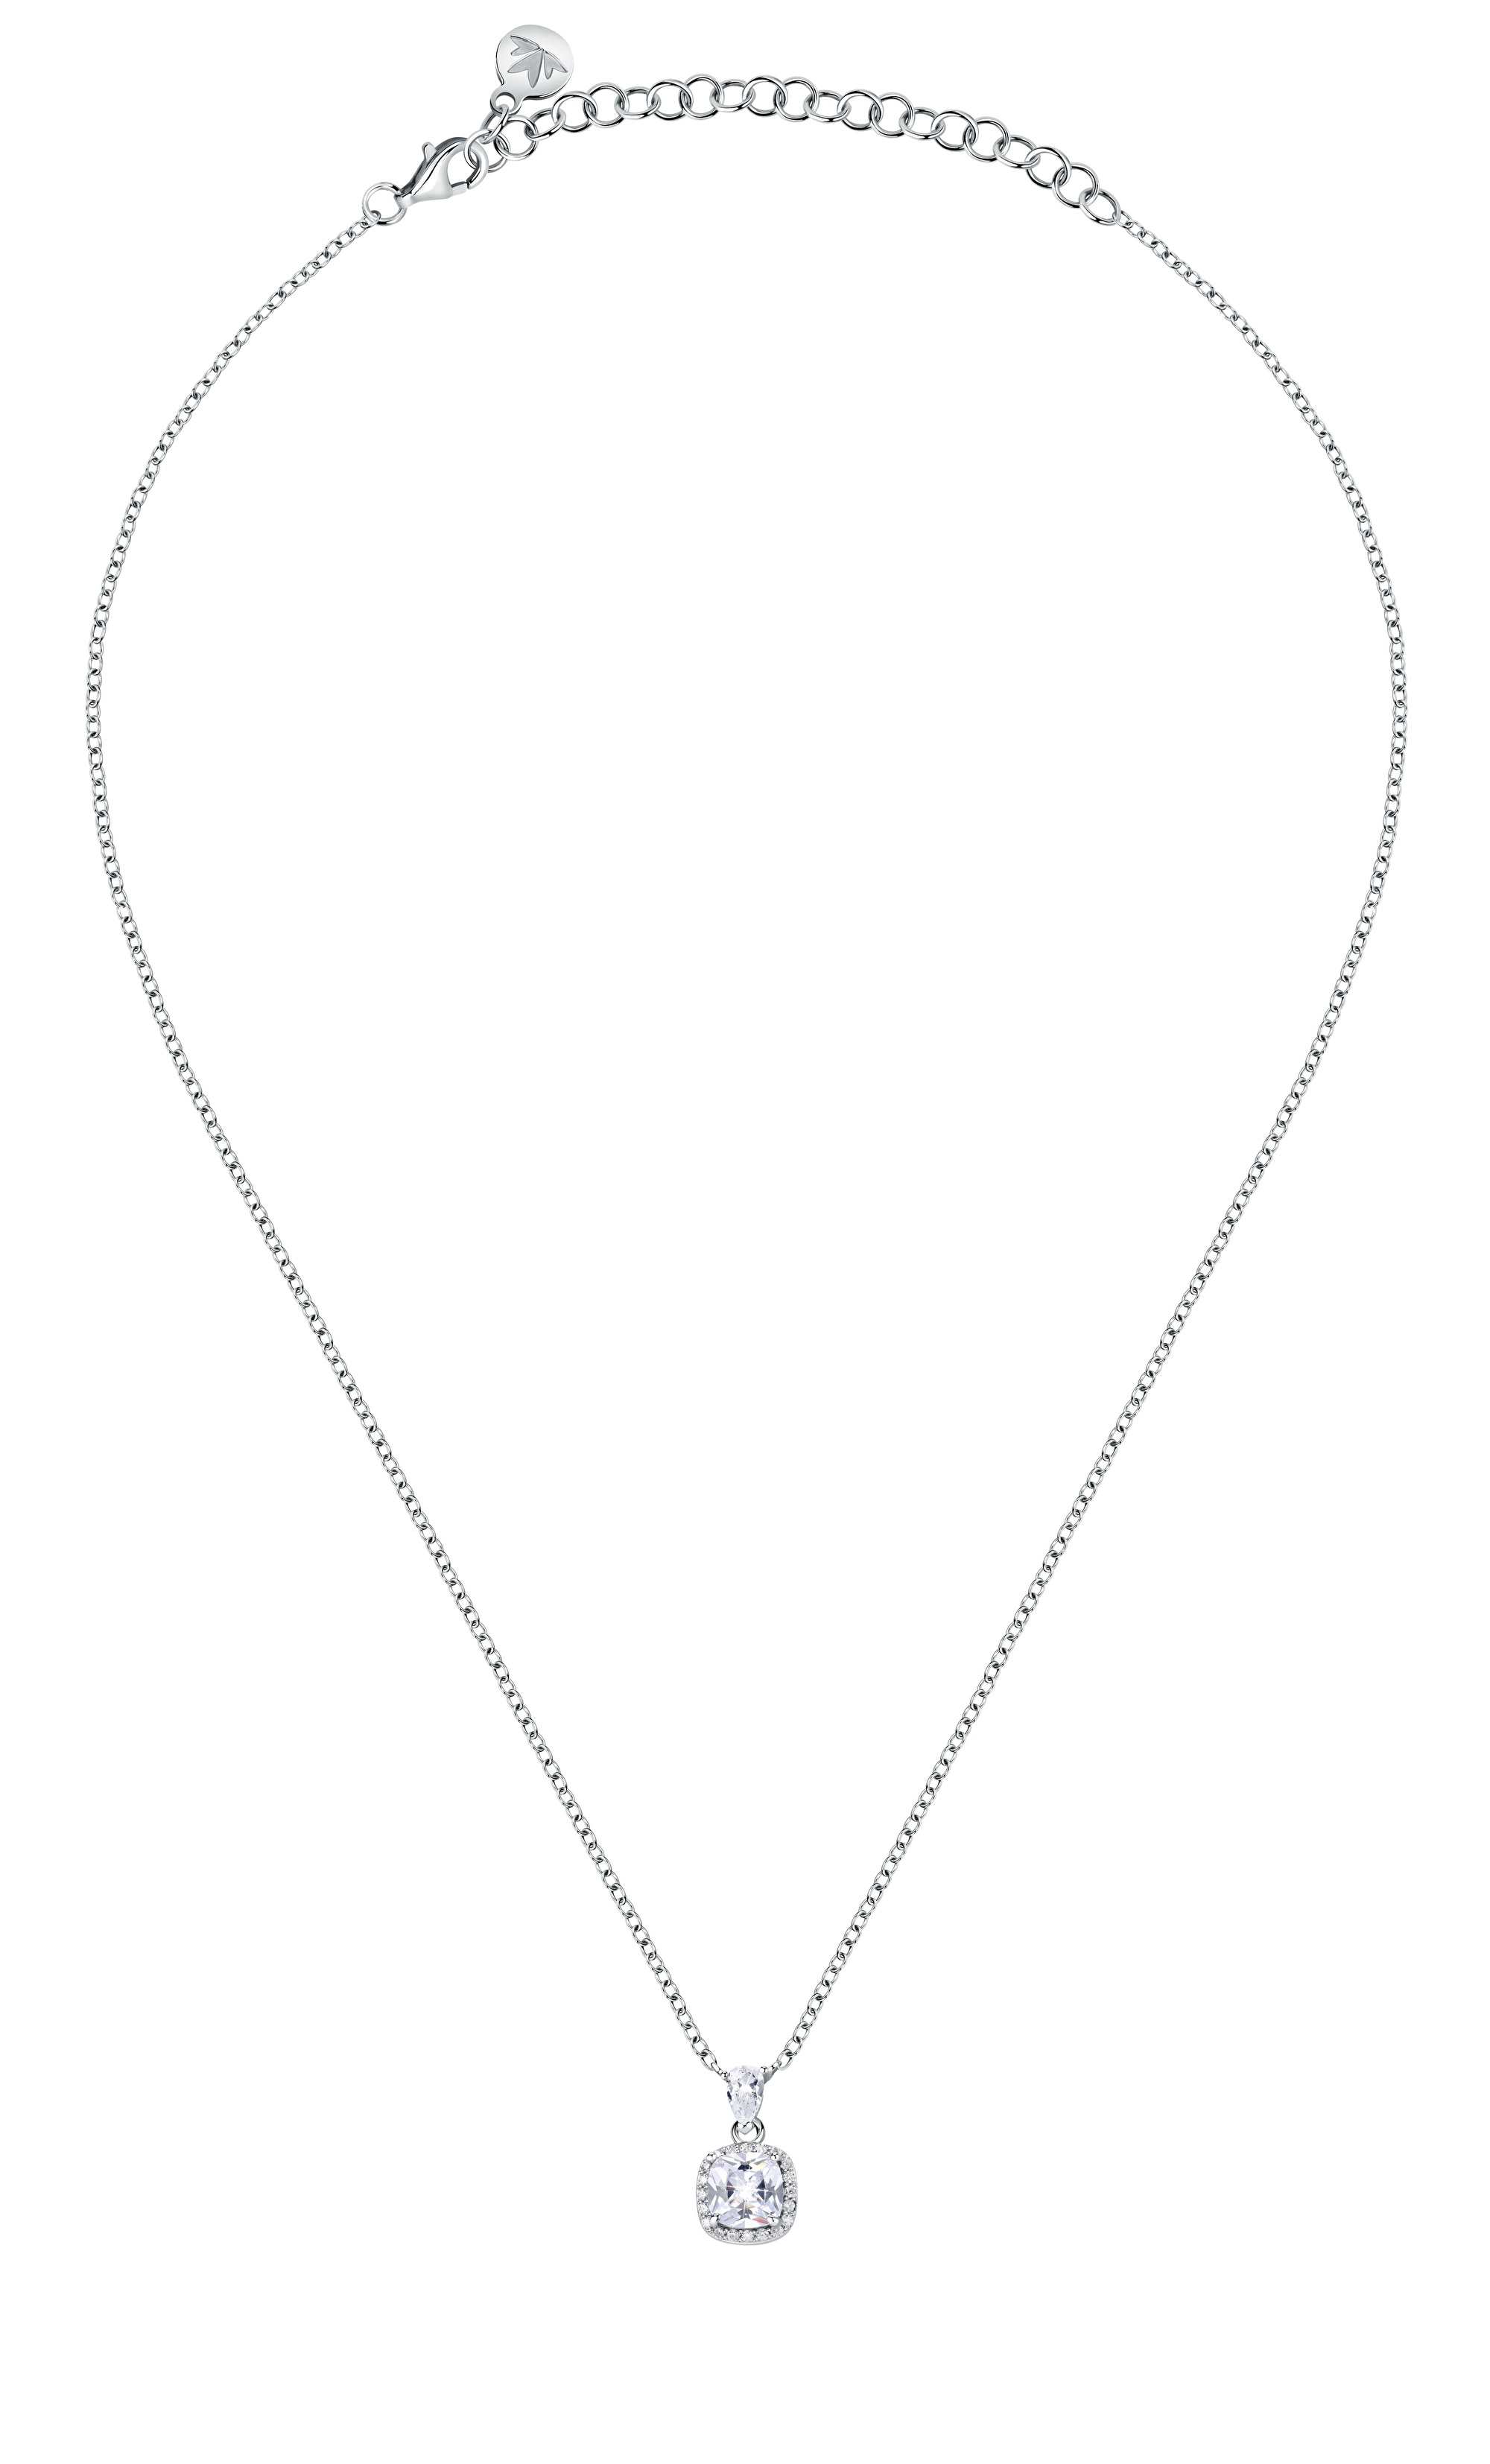 Morellato Nádherný strieborný náhrdelník Tesori SAIW109 (retiazka, prívesok)